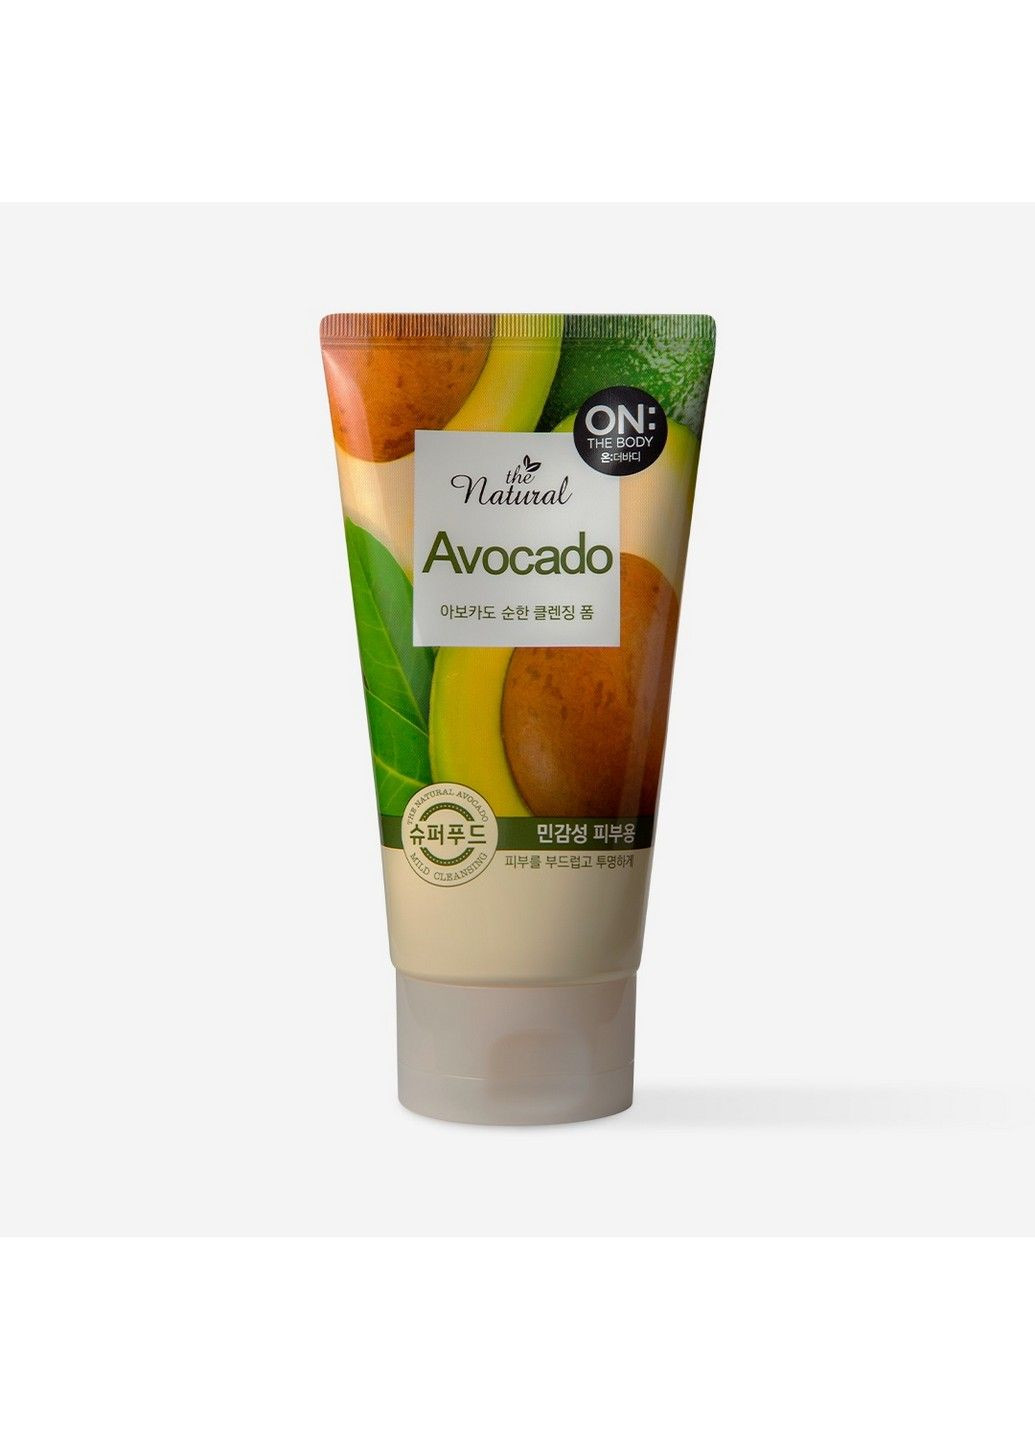 Пенка для умывания OTB The Natural Avocado с маслом авокадо и фруктовыми экстрактами, 120 г LG (278048712)